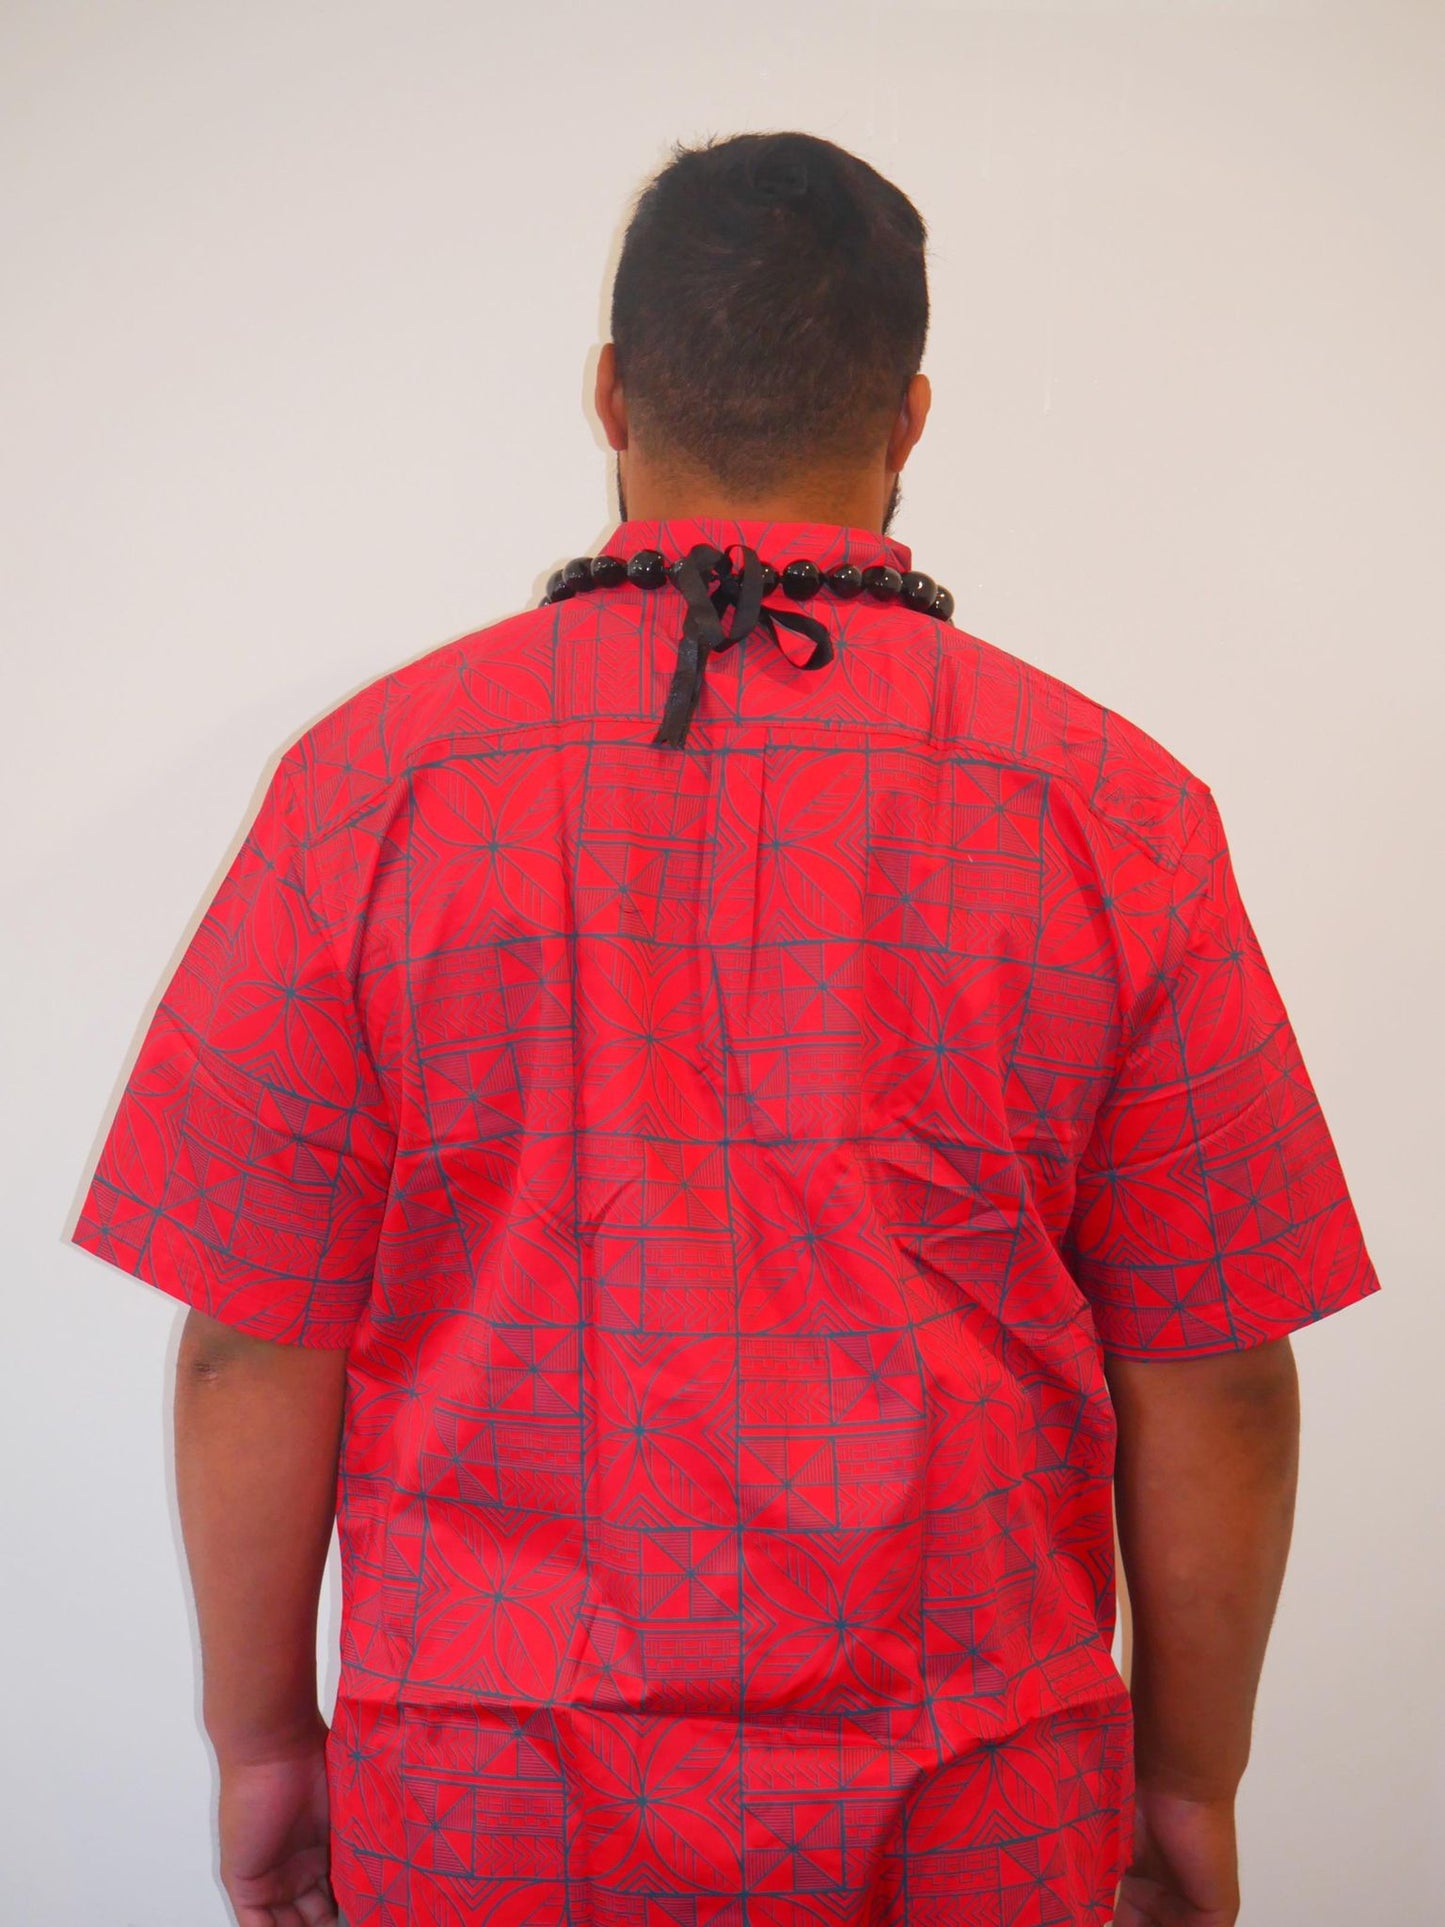 Tanoa Samoa Men's Tuaefu Shirt (Red)